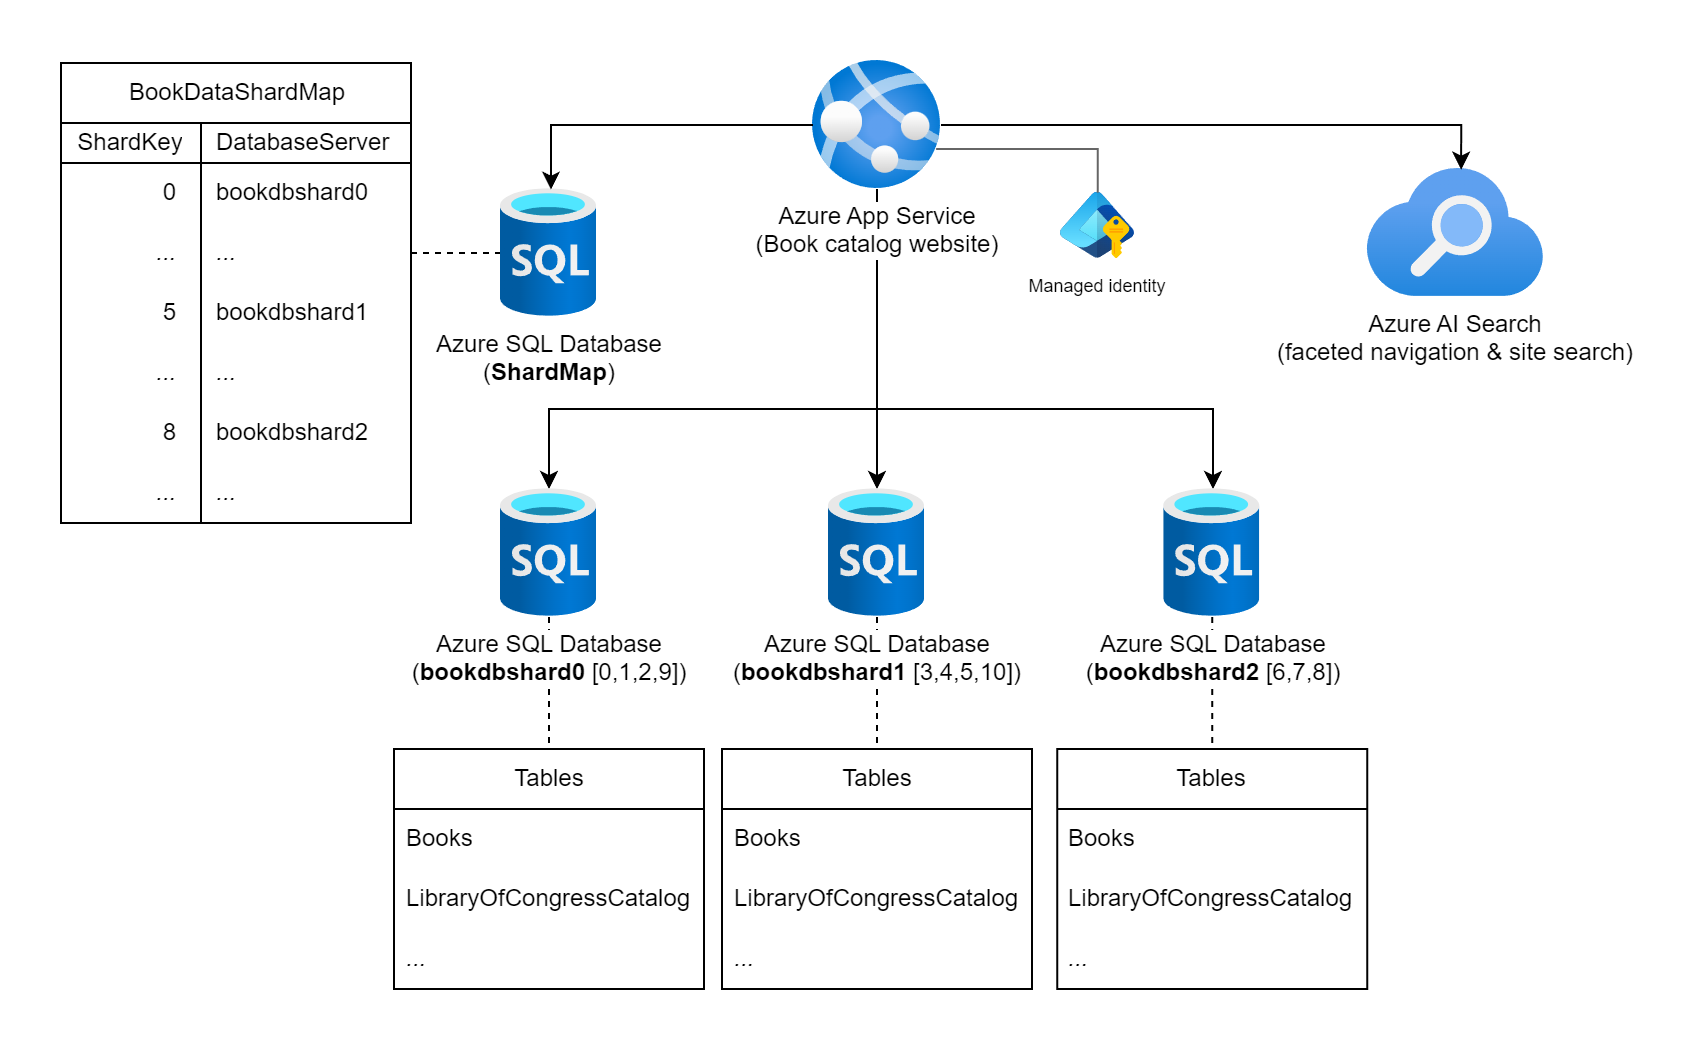 Diagrama que muestra un servicio de Azure APP, cuatro Azure SQL Databases y una instancia de Azure AI Search.